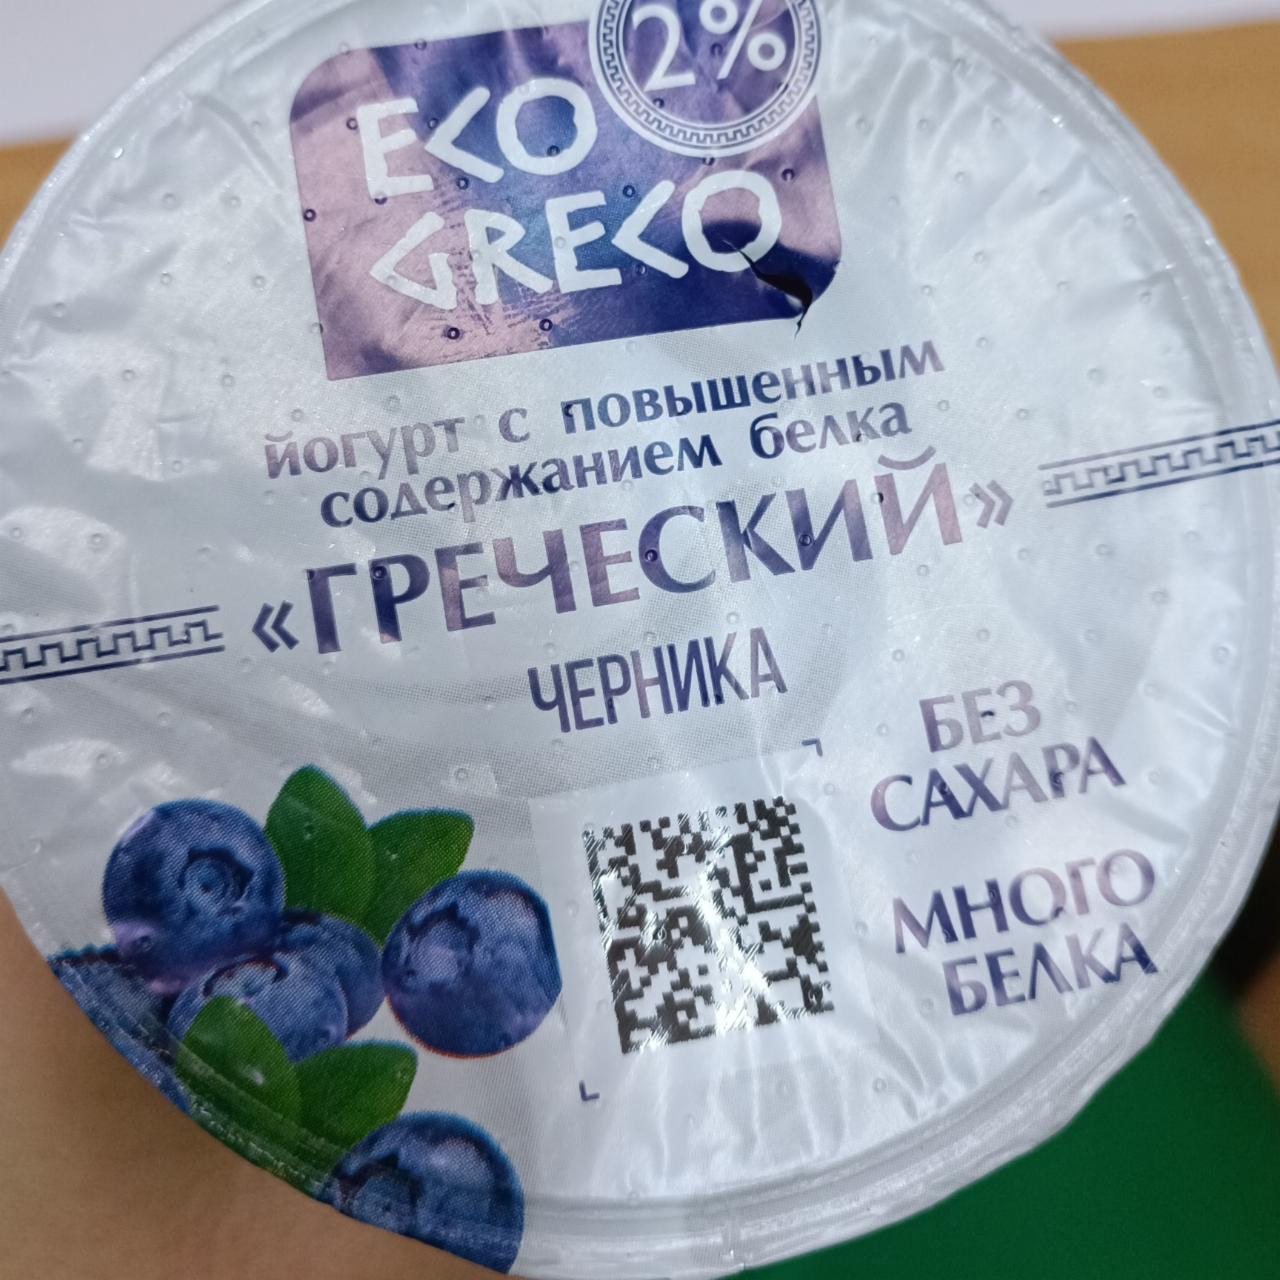 Фото - греческий йогурт с черникой Eco greco